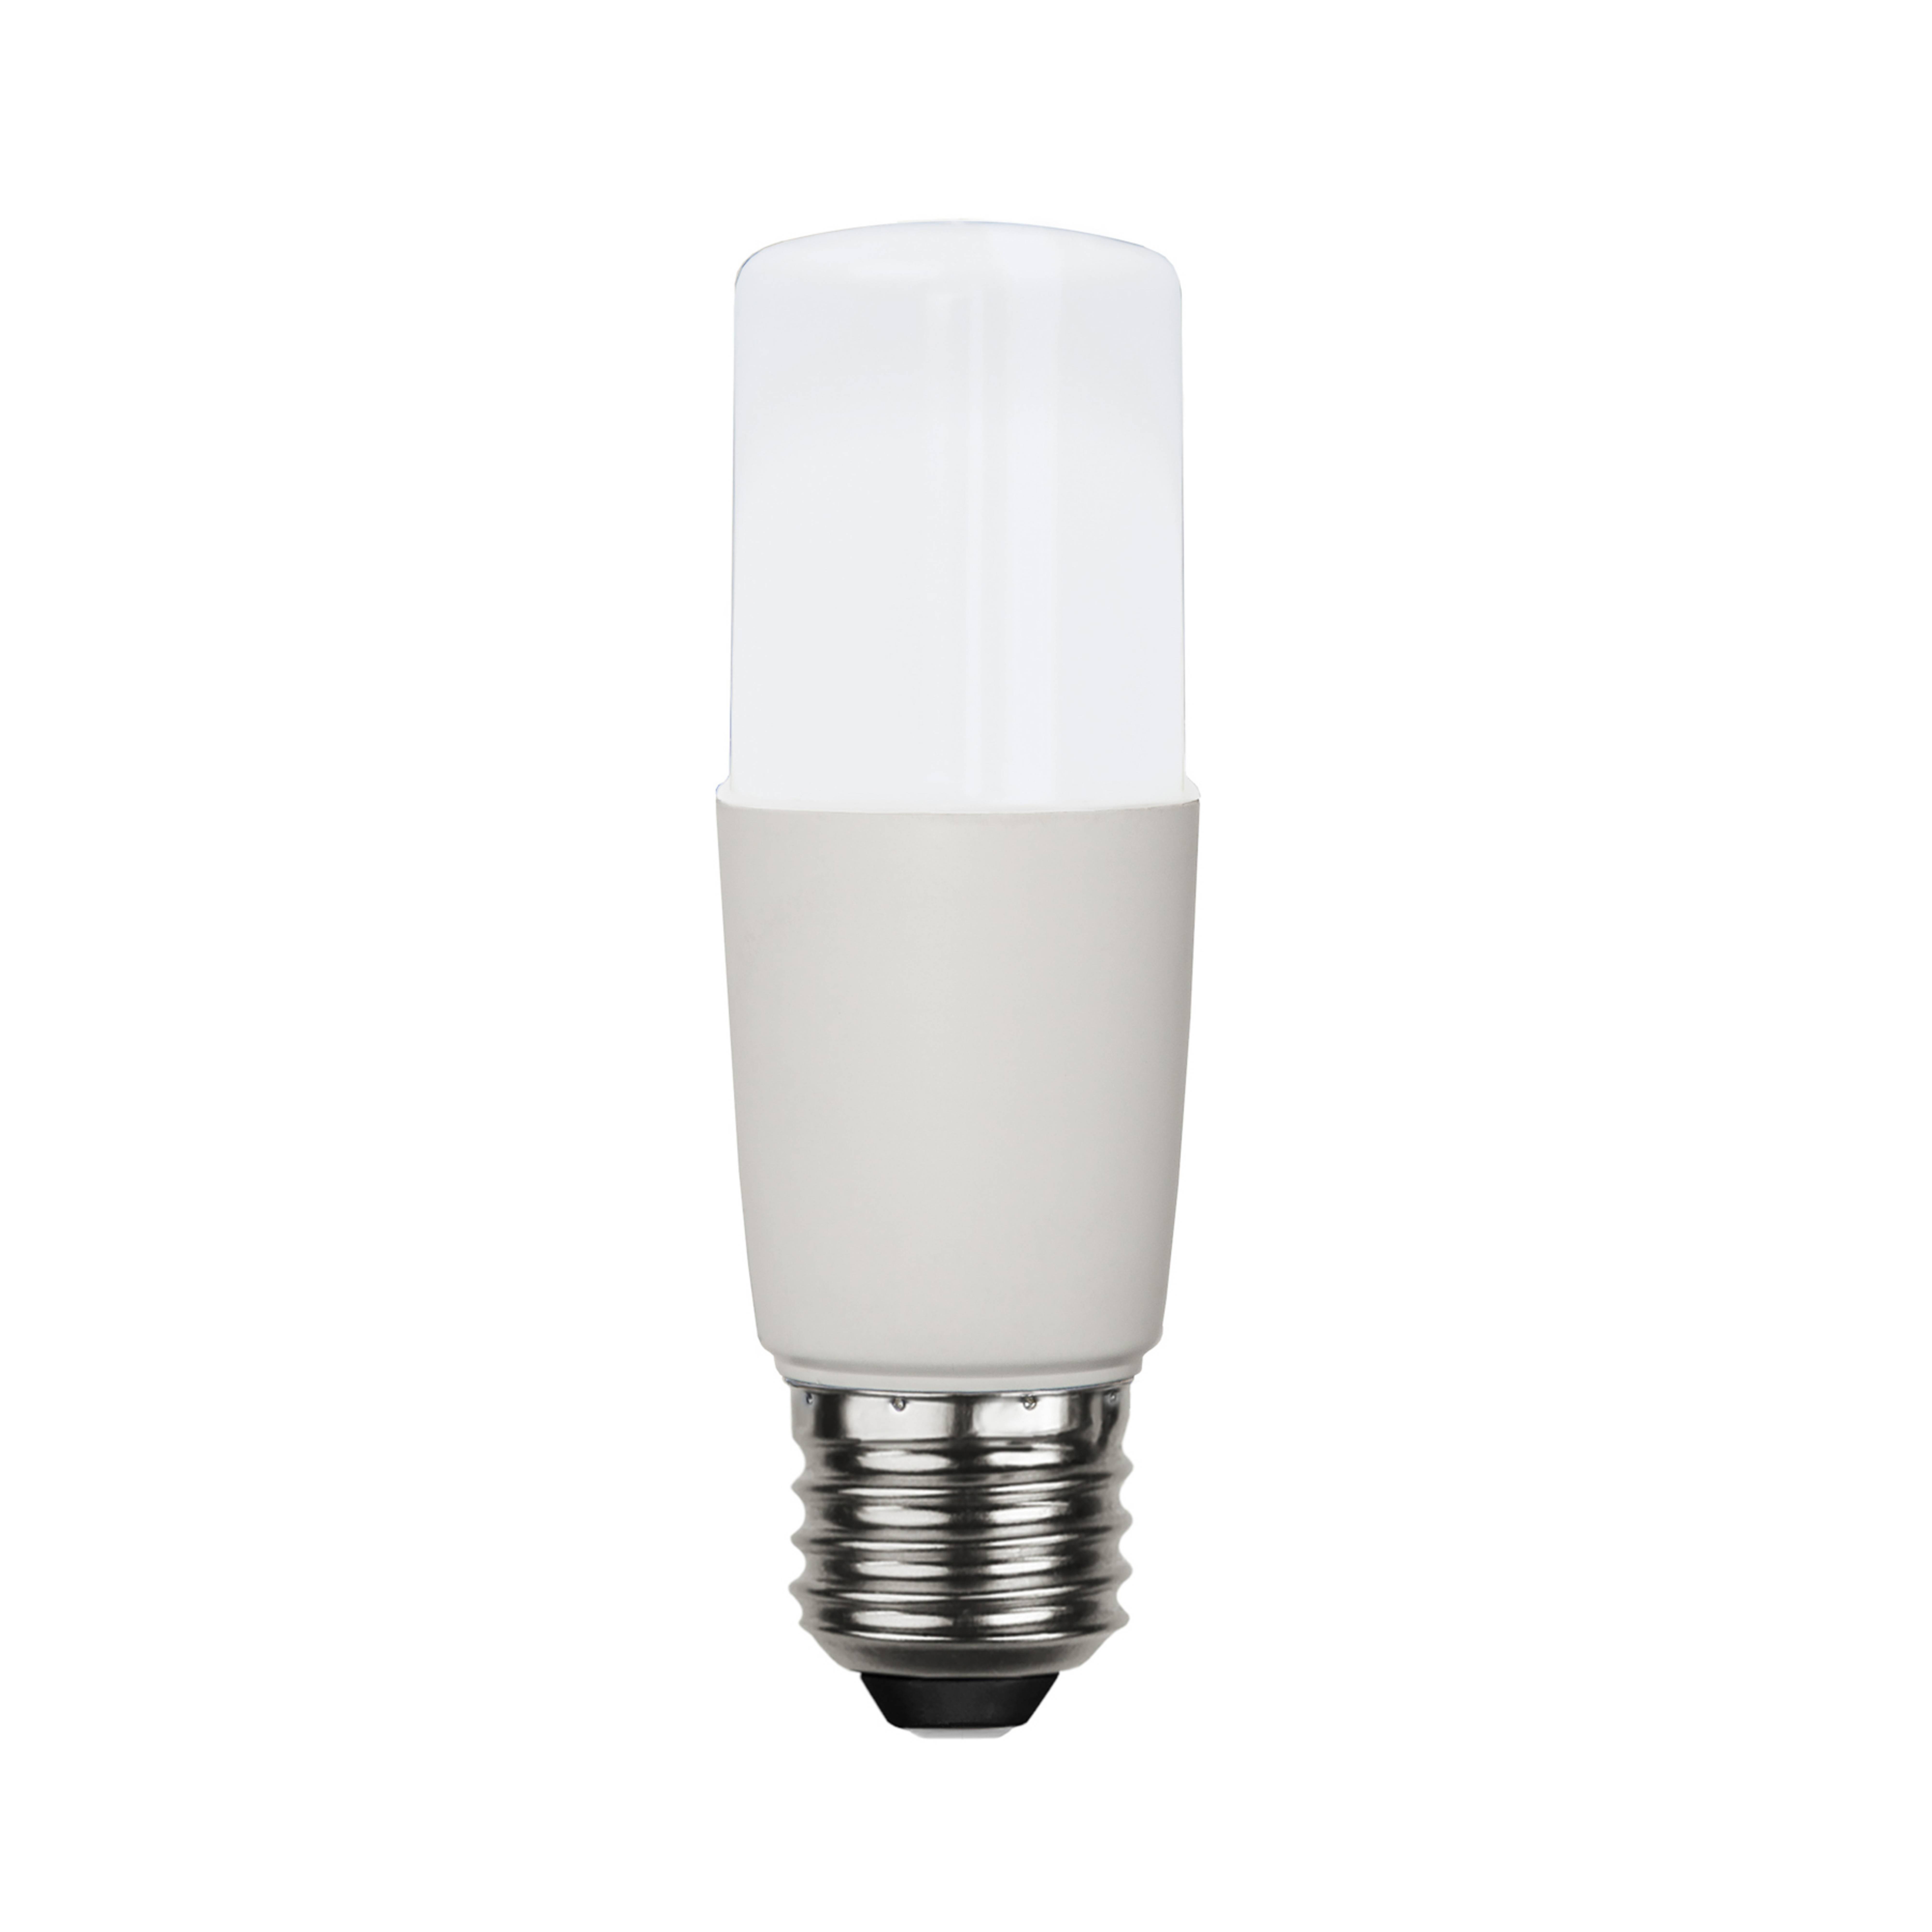 LED-Lampe E27 T40, 7W, 6.500 K, 860 lm, weiß matt